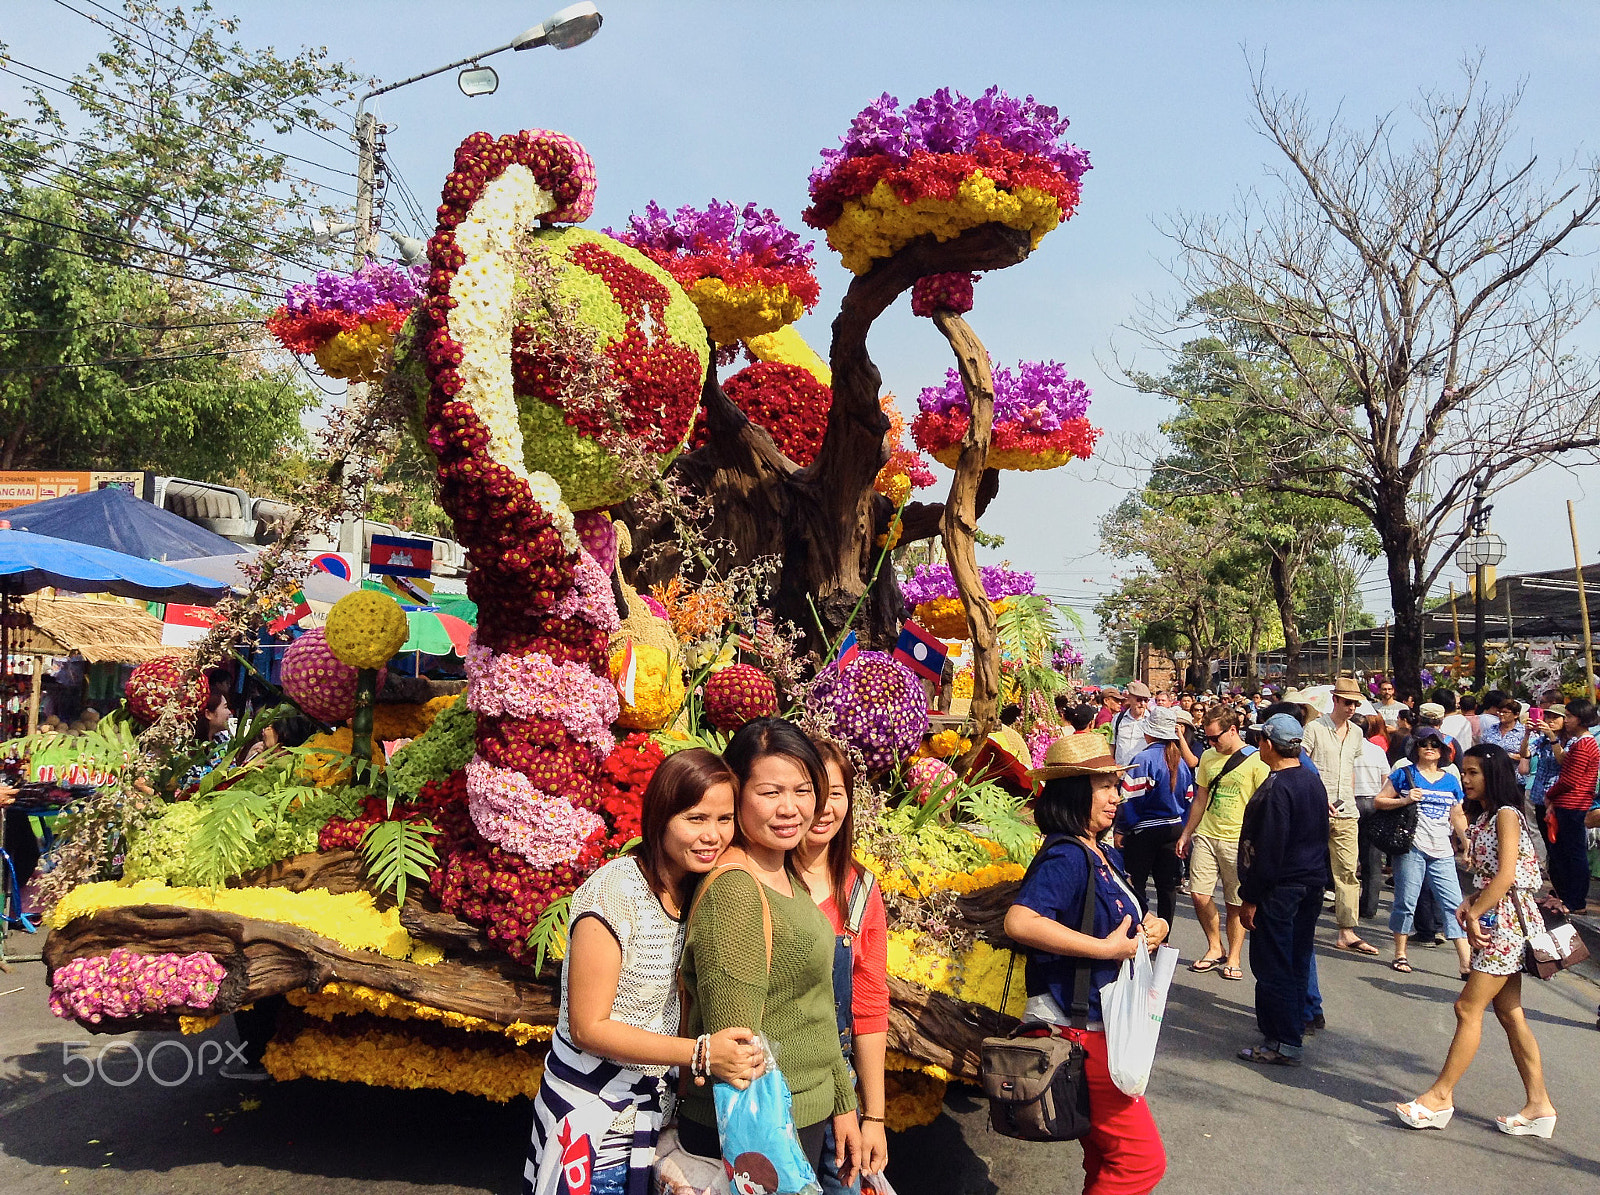 Apple iPad mini + iPad mini back camera 3.3mm f/2.4 sample photo. Chiang mai, thailand - 7 february 2015: flower festival photography